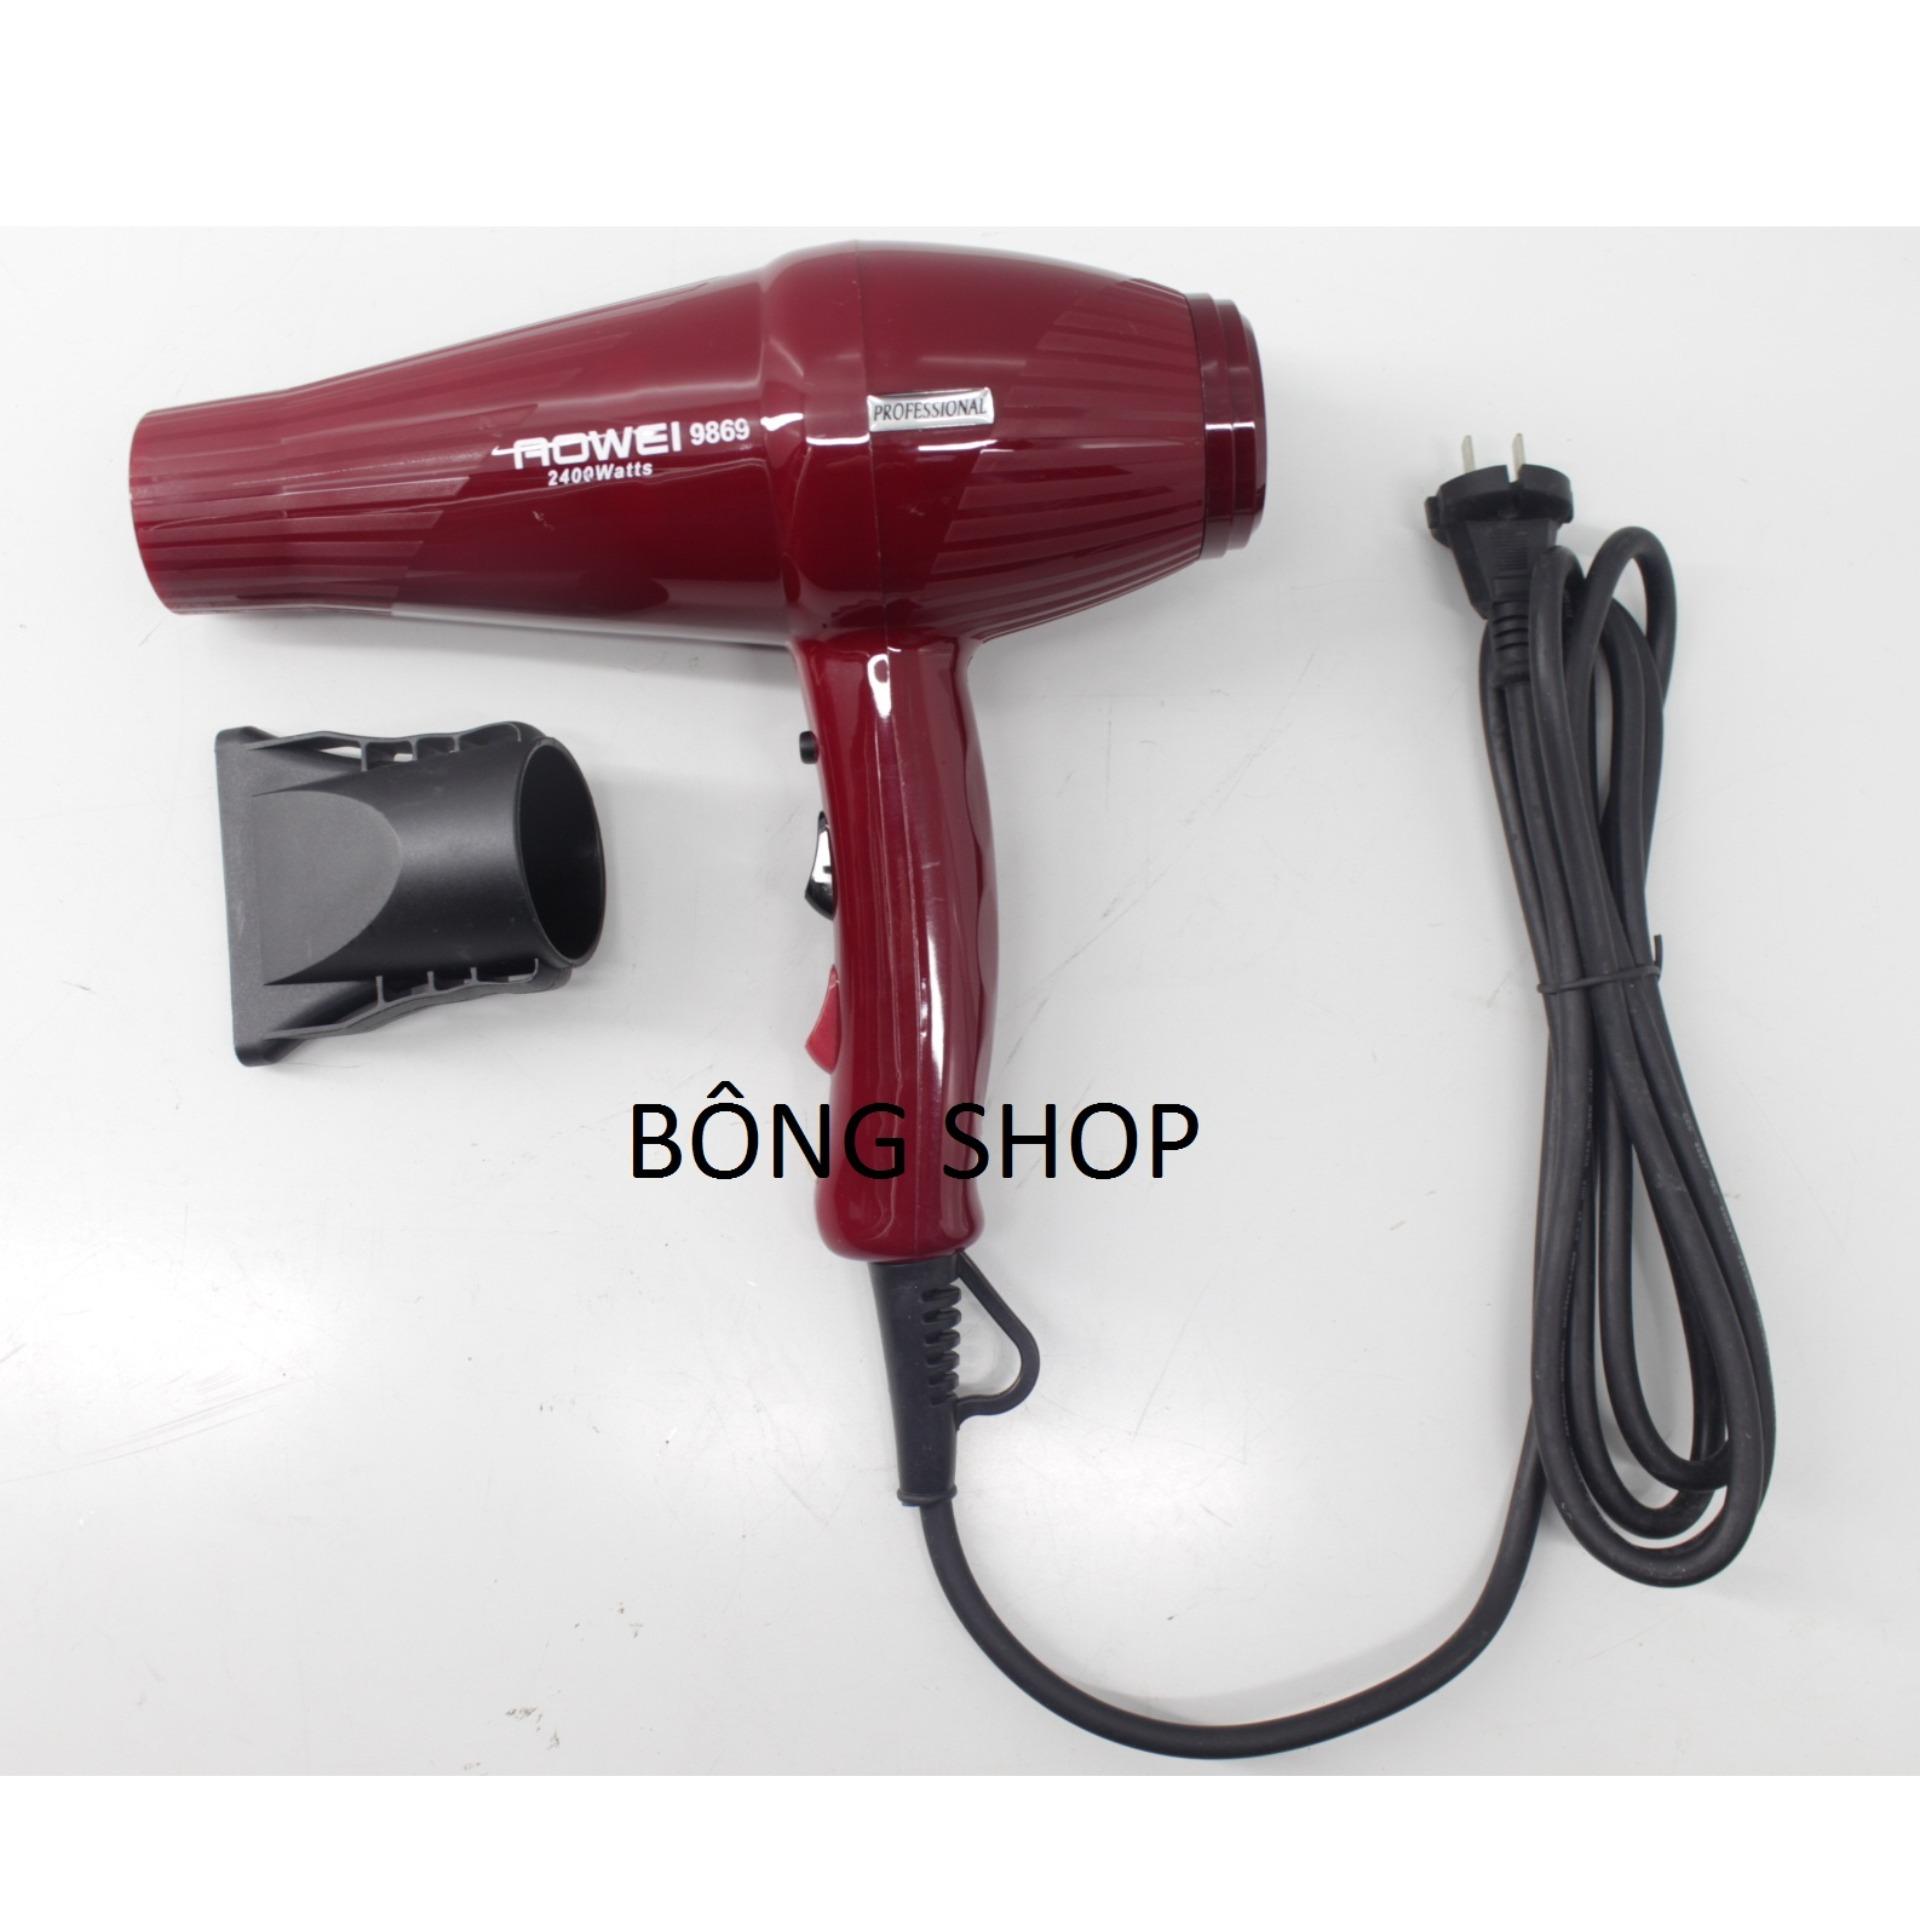 Máy Sấy tóc Salon AOWEI 9869-2400W ( Đỏ ) NEW 2018